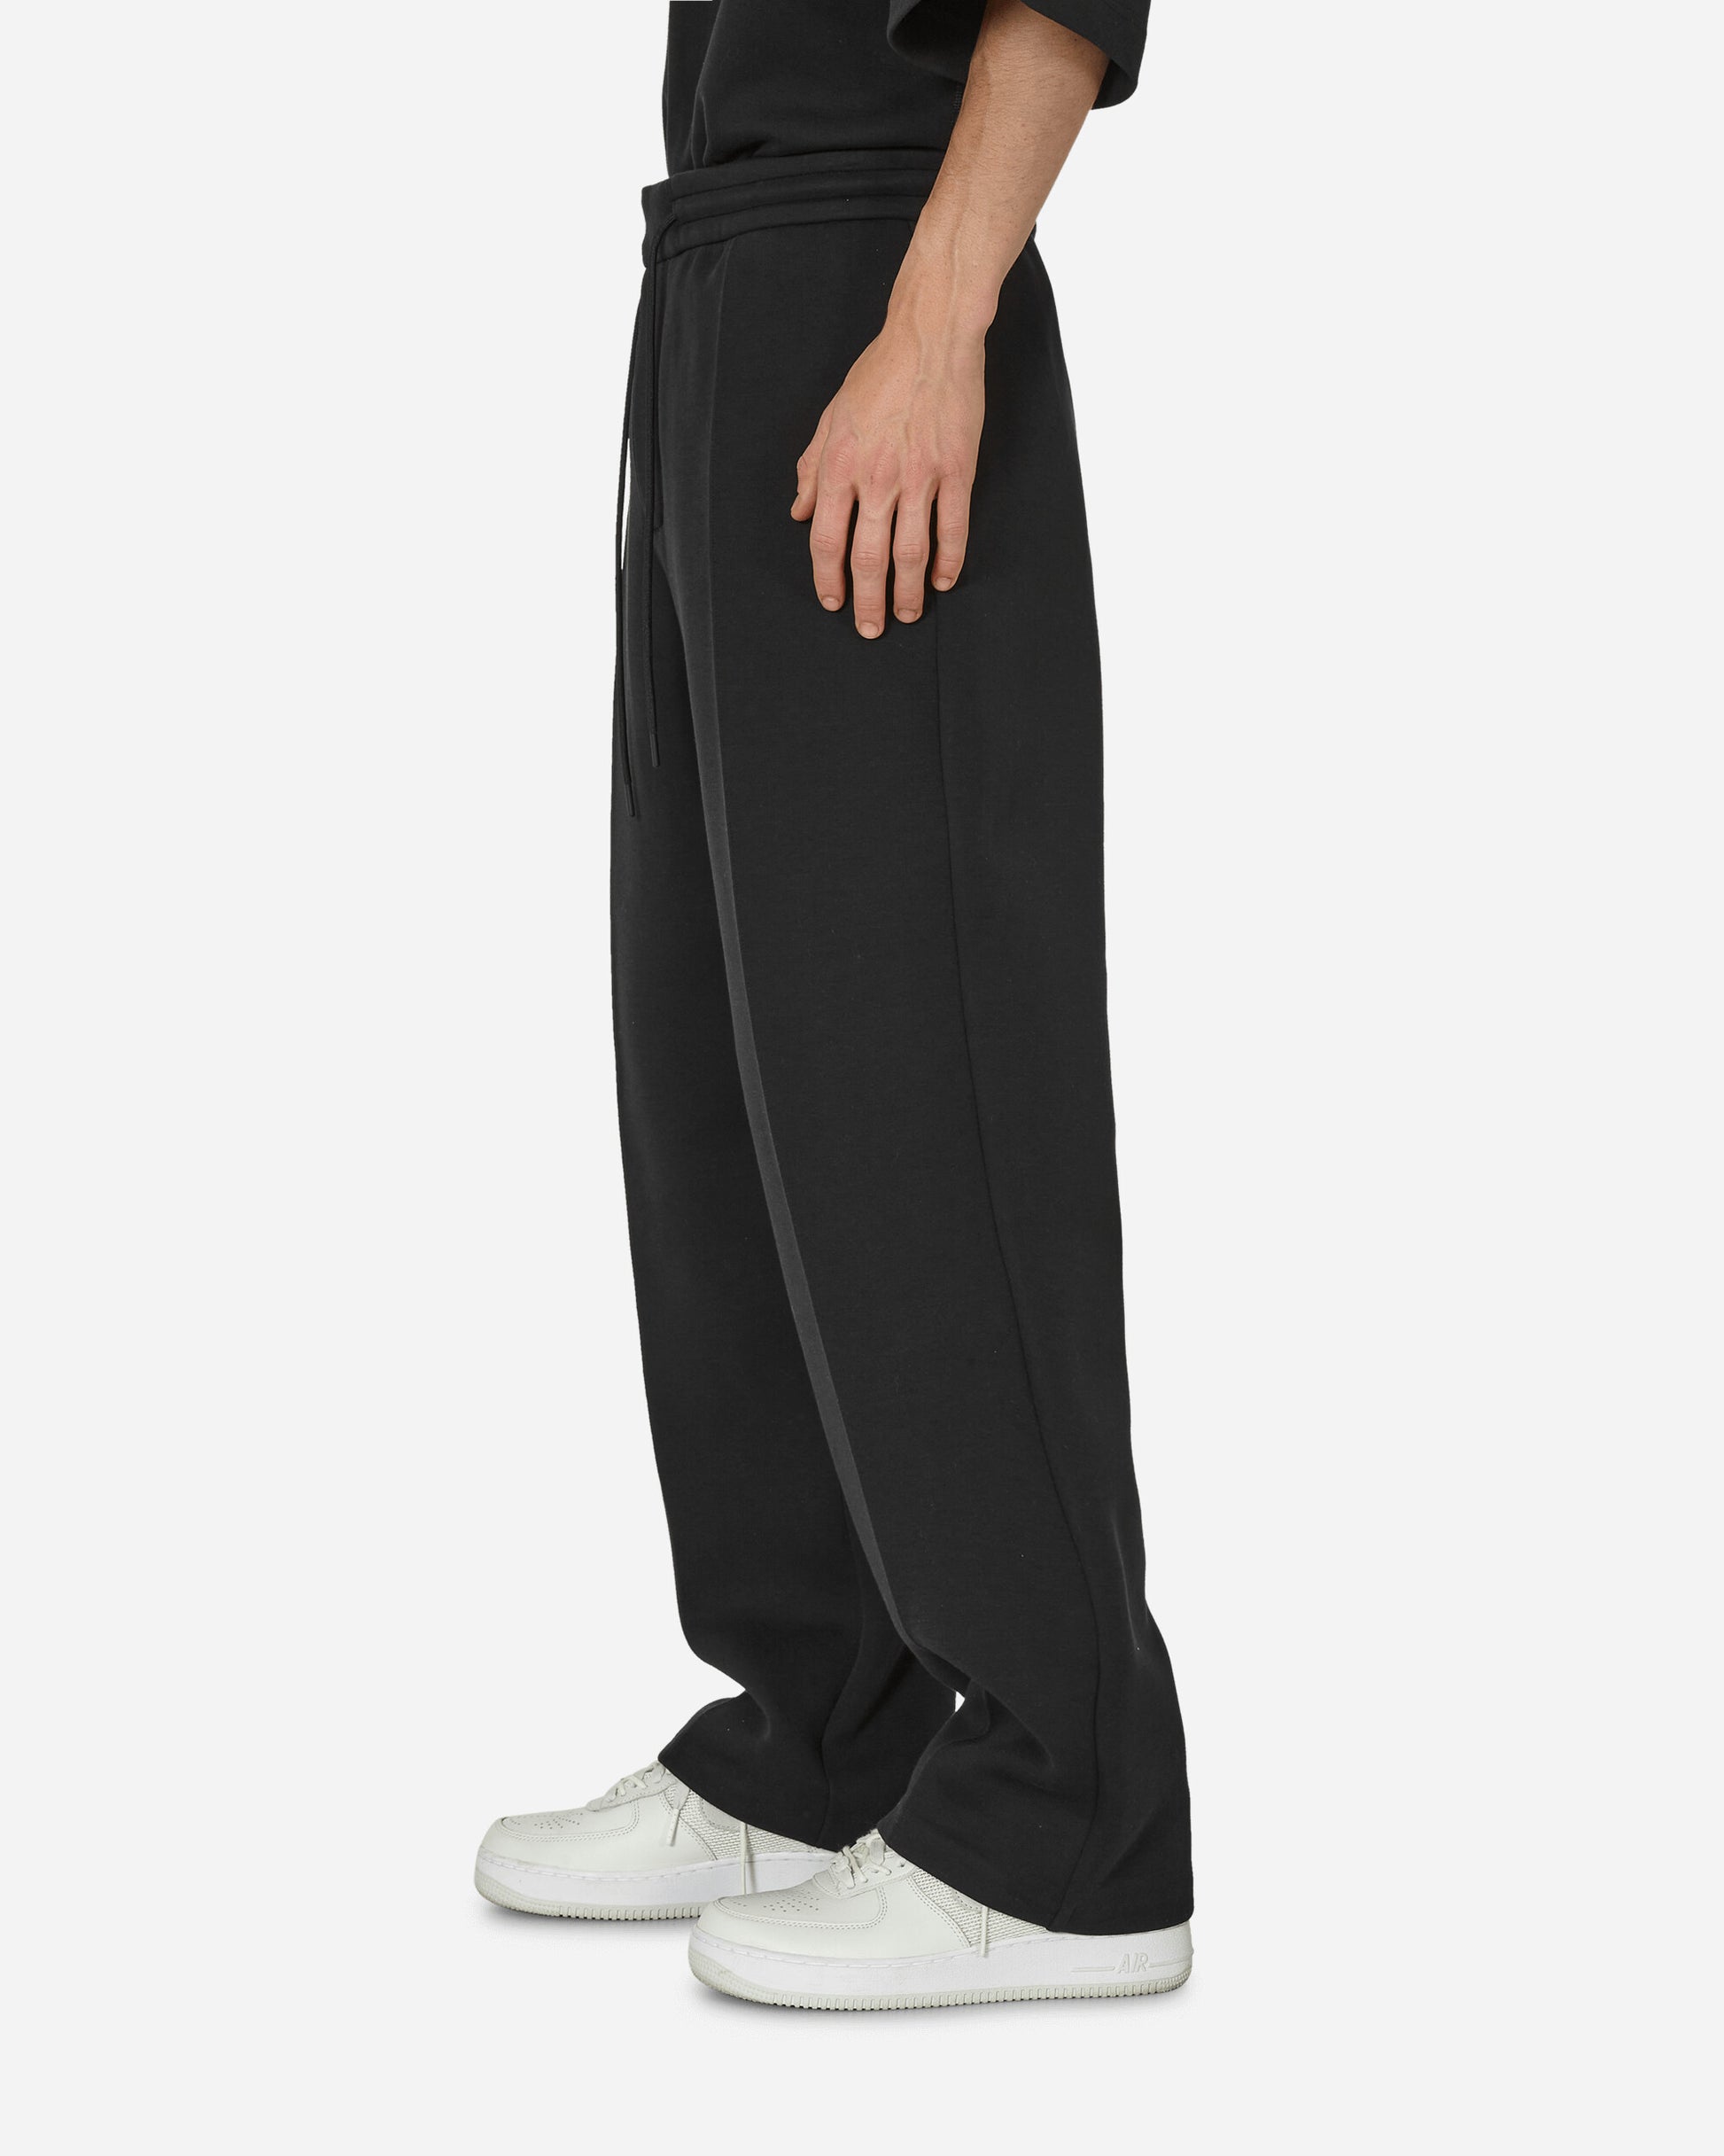 Nike M Nk Tch Flc Tailored Pant Black/Black Pants Sweatpants FB8163-010